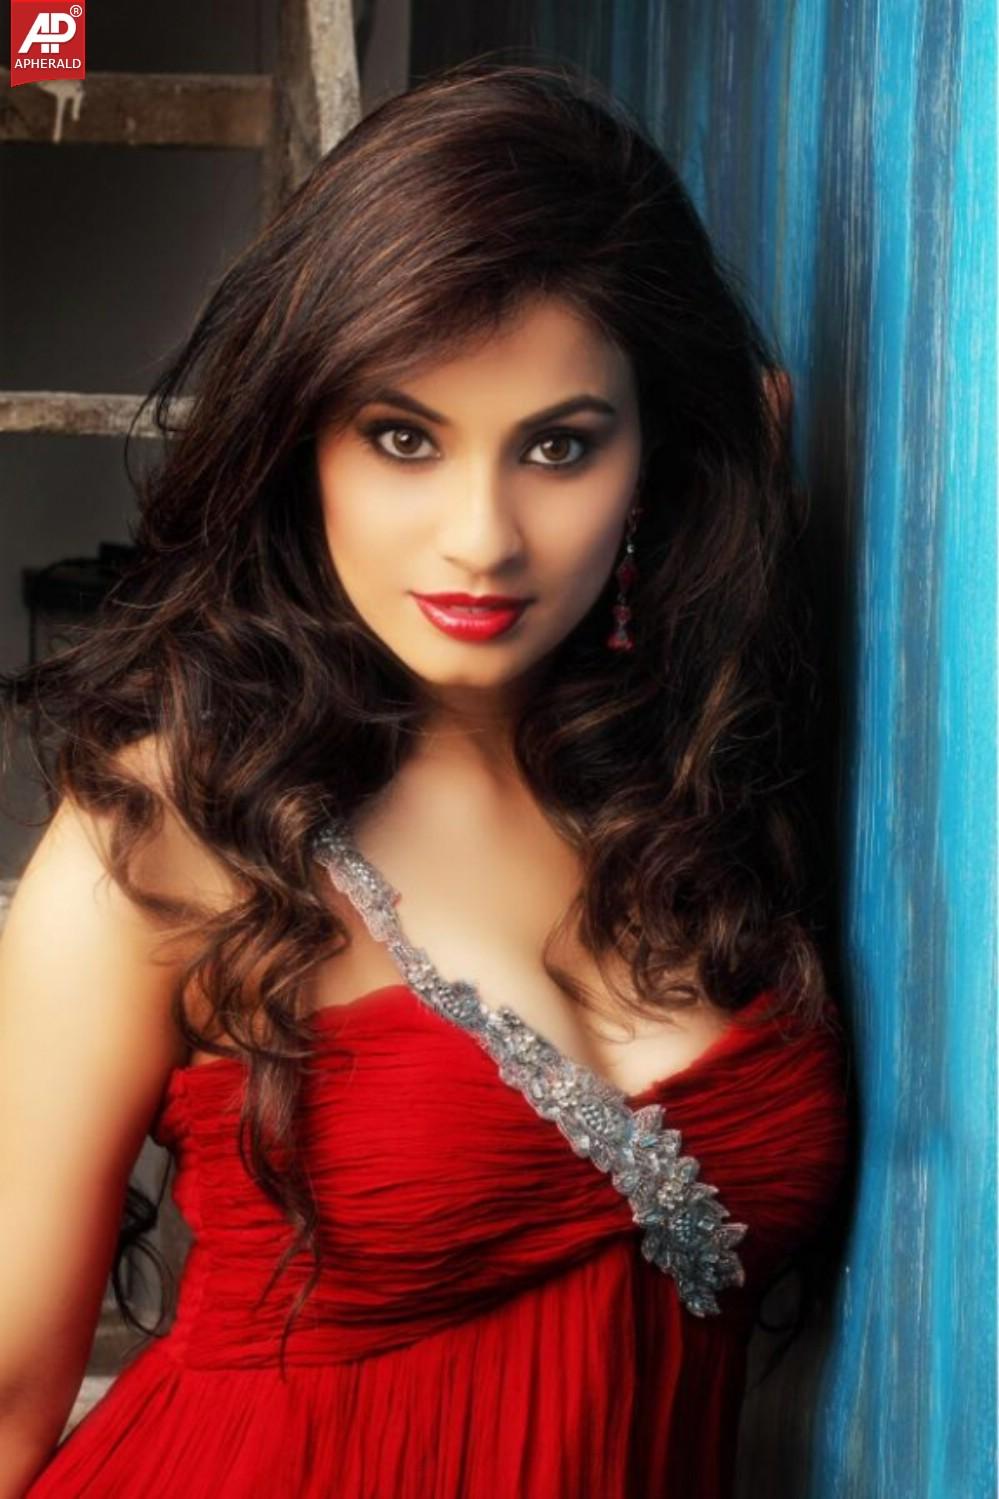 Hottest Indian Actress Photos